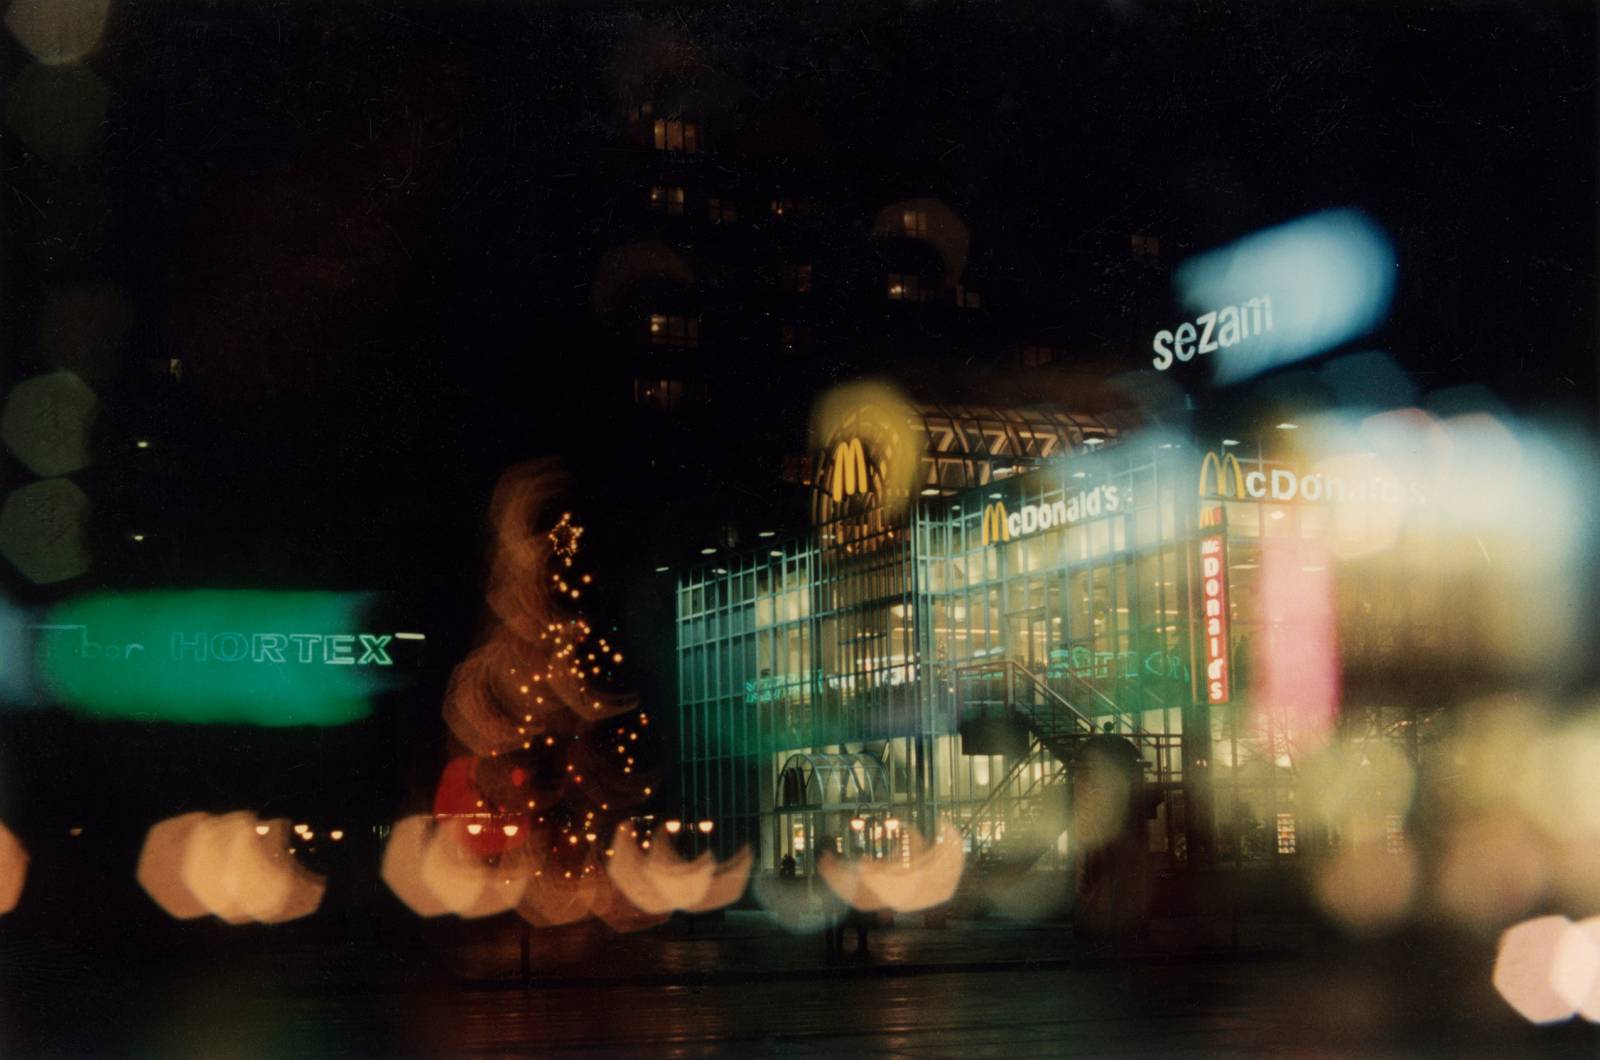 Fot. Edward Grochowicz, Restauracja McDonalds przy domu towarowym Sezam, z serii Noworoczne iluminacje, 1993-1996, Ośrodek KARTA